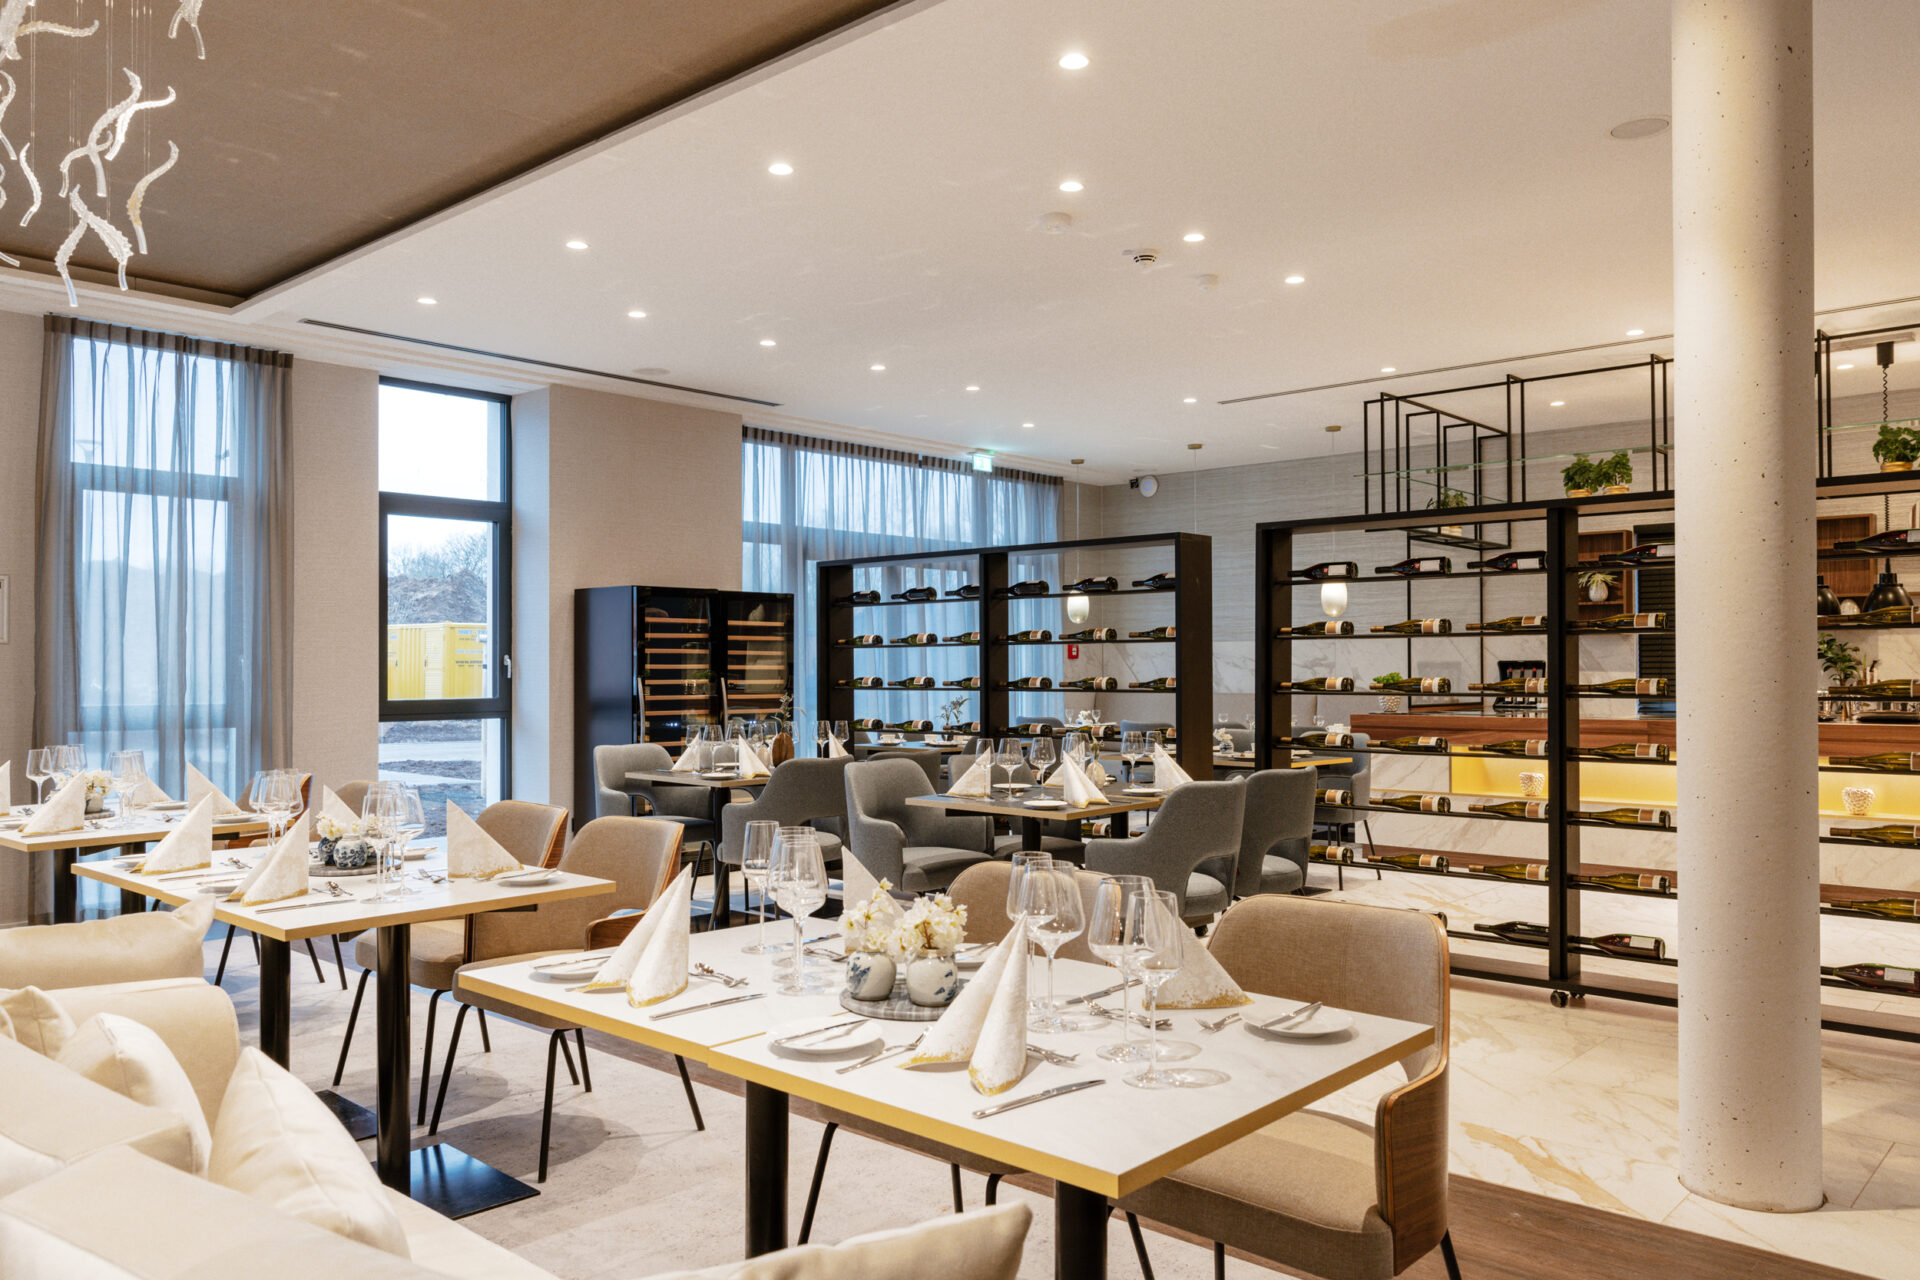 Arnolds Restaurant eröffnet am 15. März und garantiert künftig Hochgenuss aus der modernen deutschen und regionalen Küche im stilvollen Ambiente